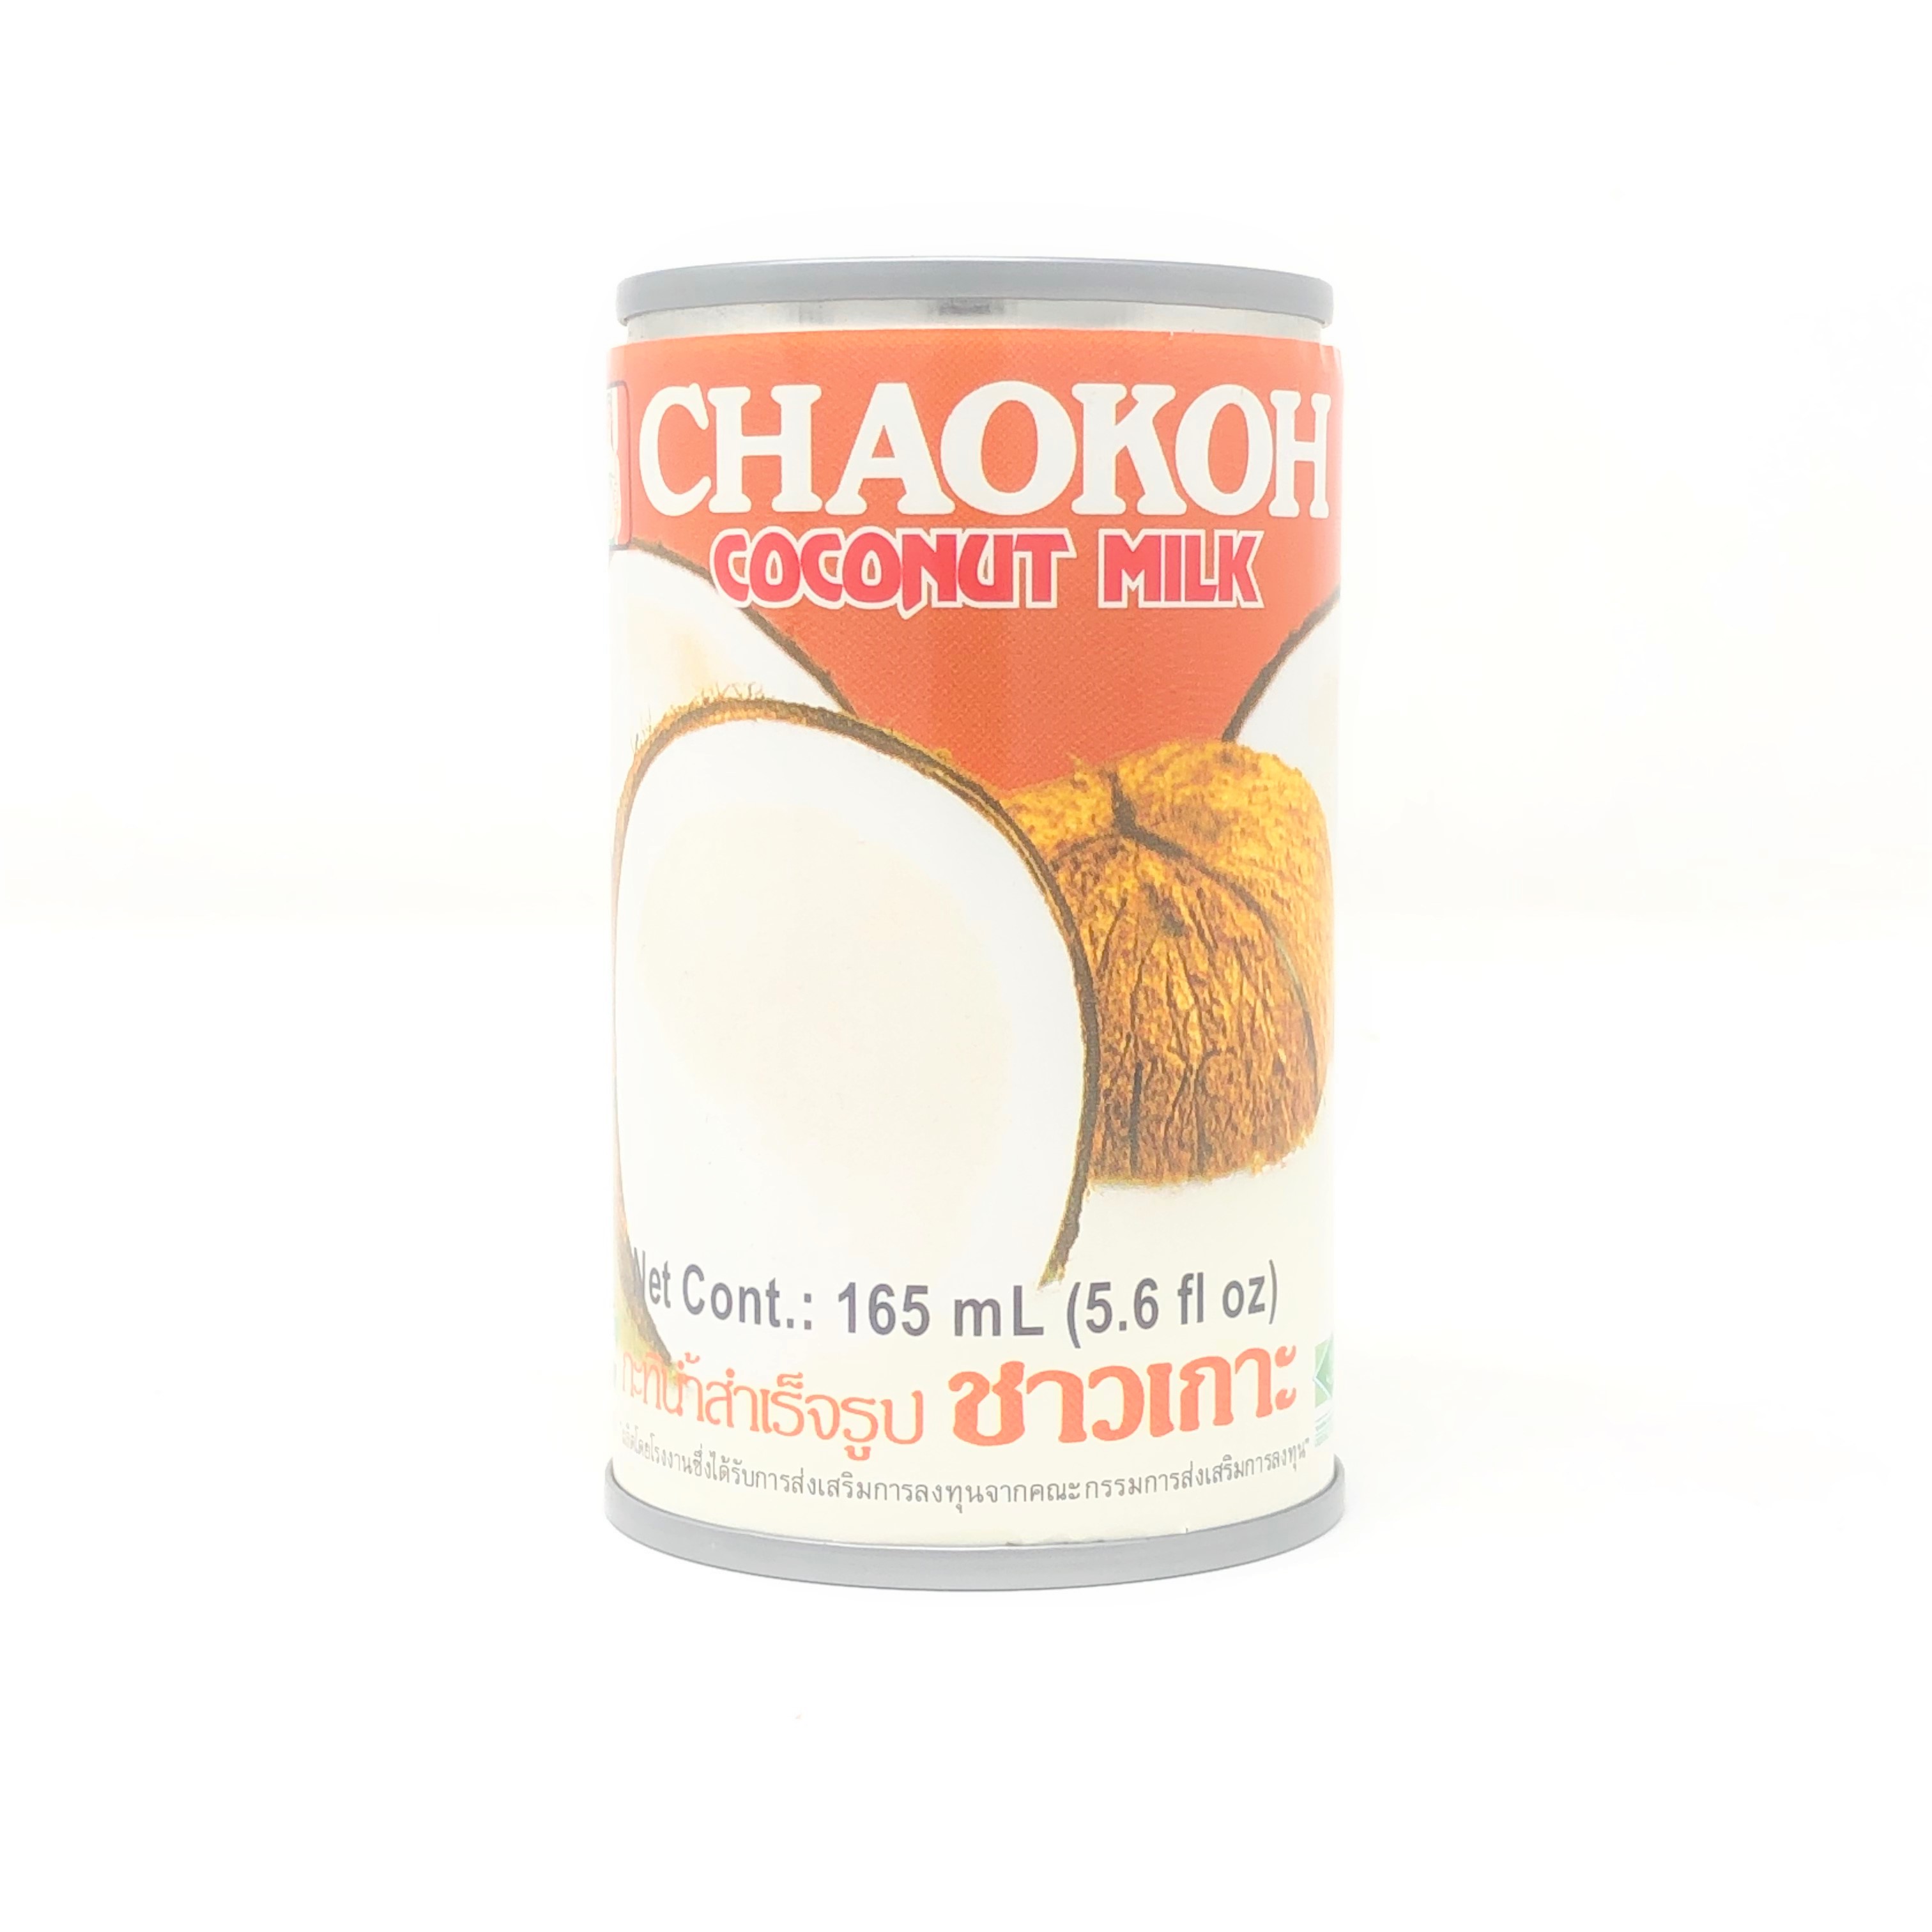 タイ食材 雑貨 通販 タイの市場 アイタイランド ココナッツミルク チャオコー165ml Gw0g